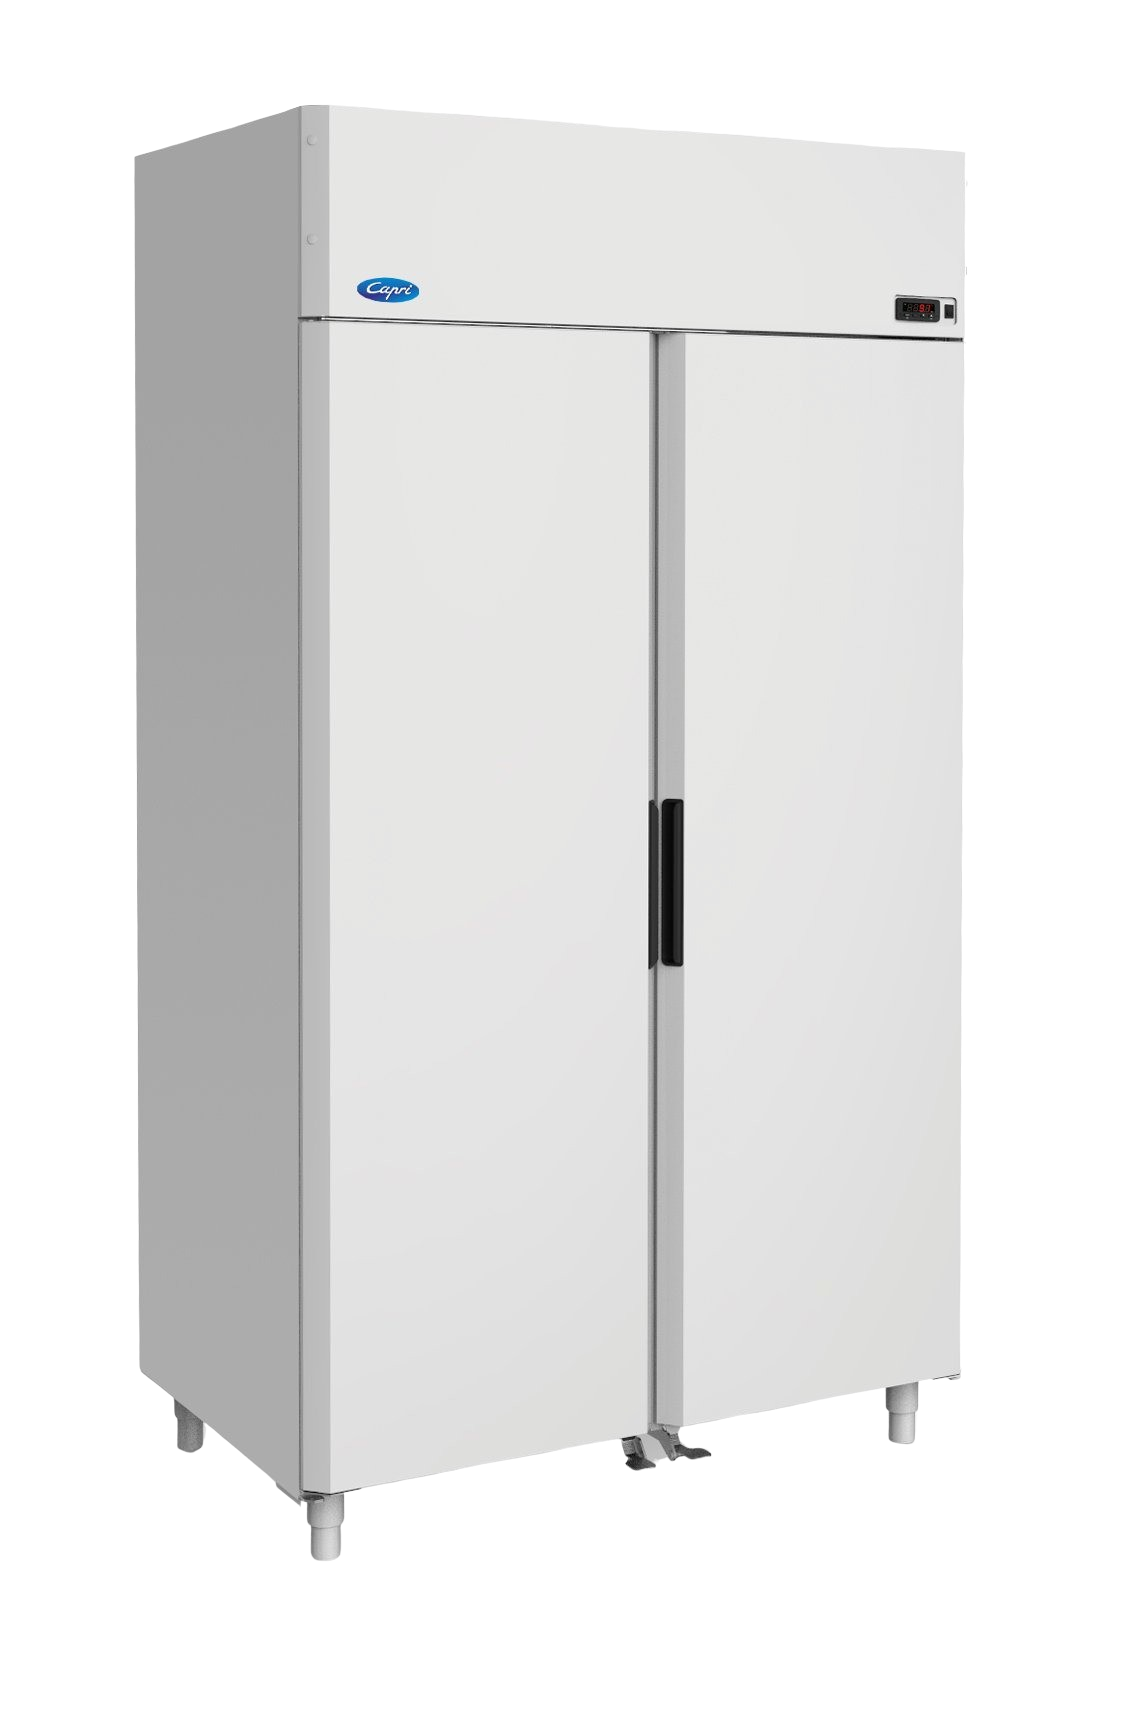 Холодильный шкаф МХМ Капри 1,12МВ